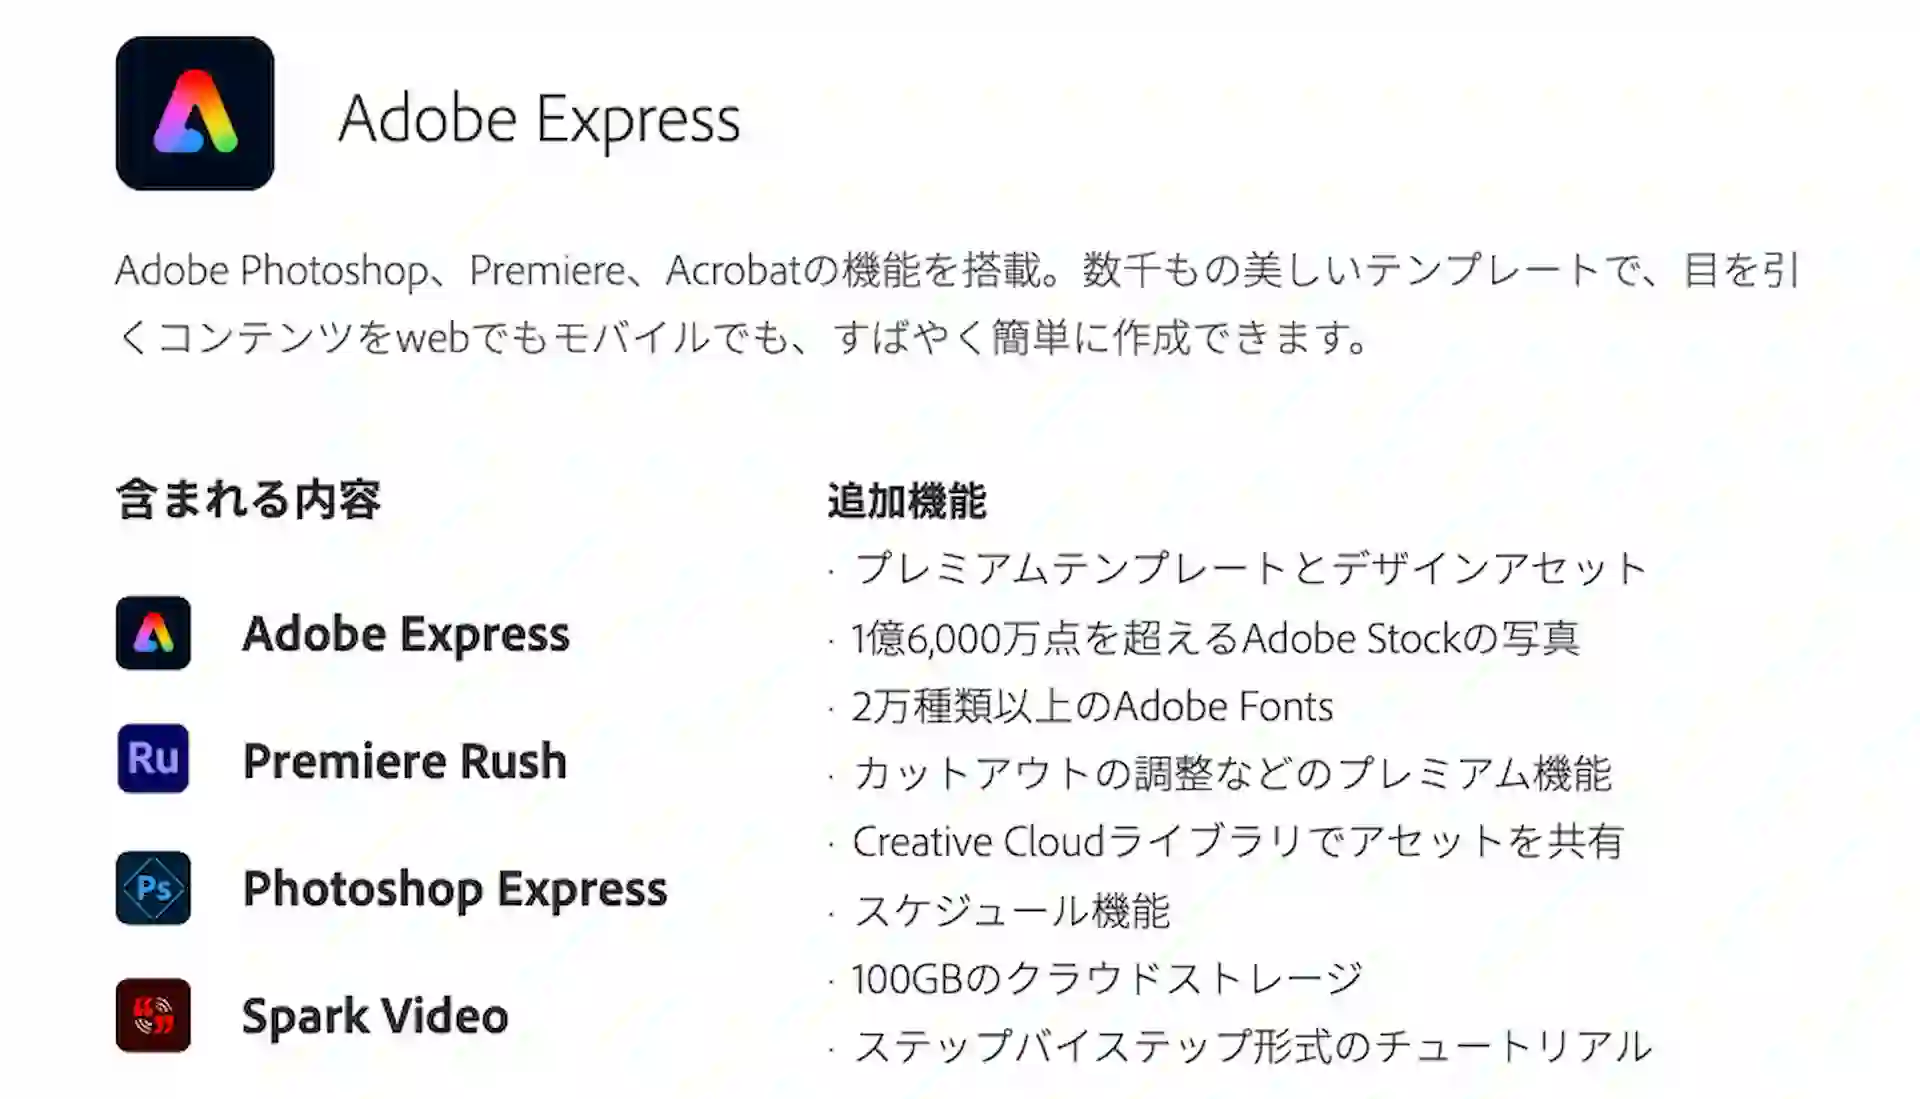 adobe express plan screenshot